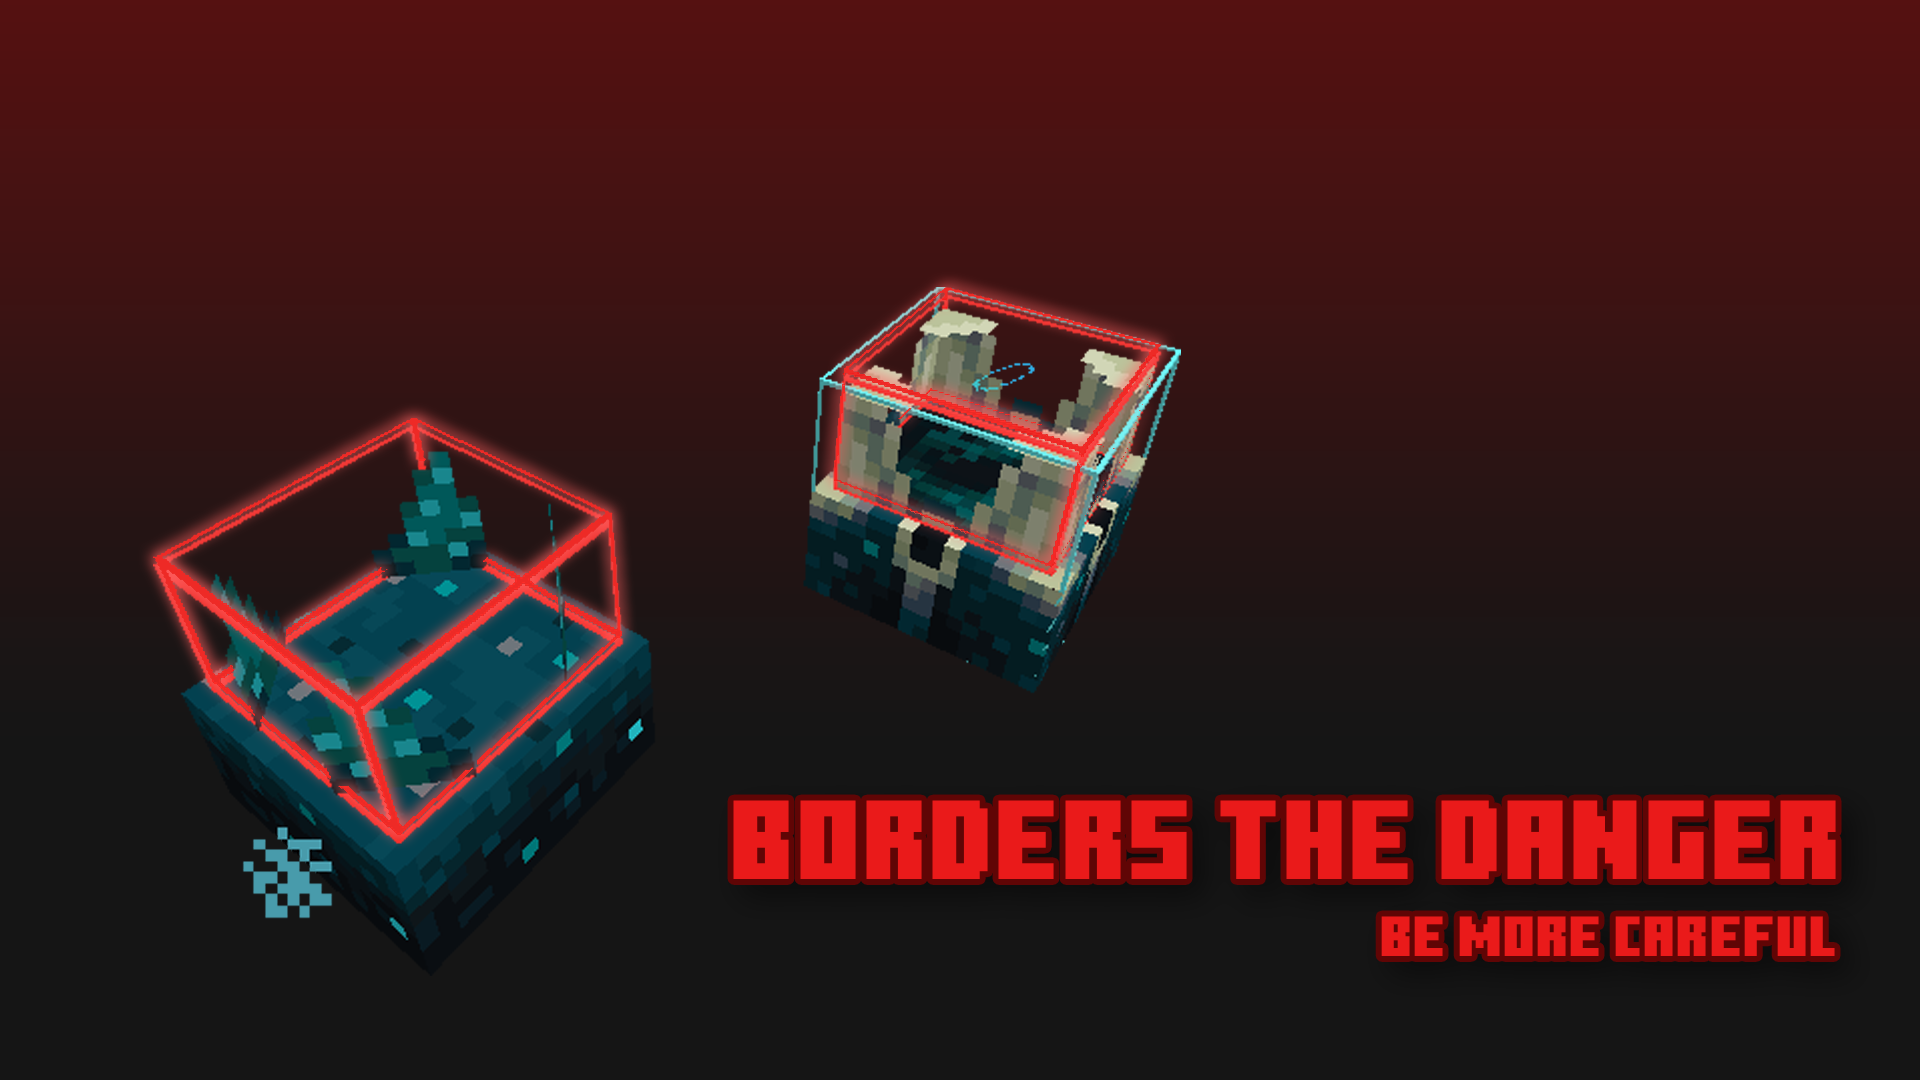 Borders the Danger